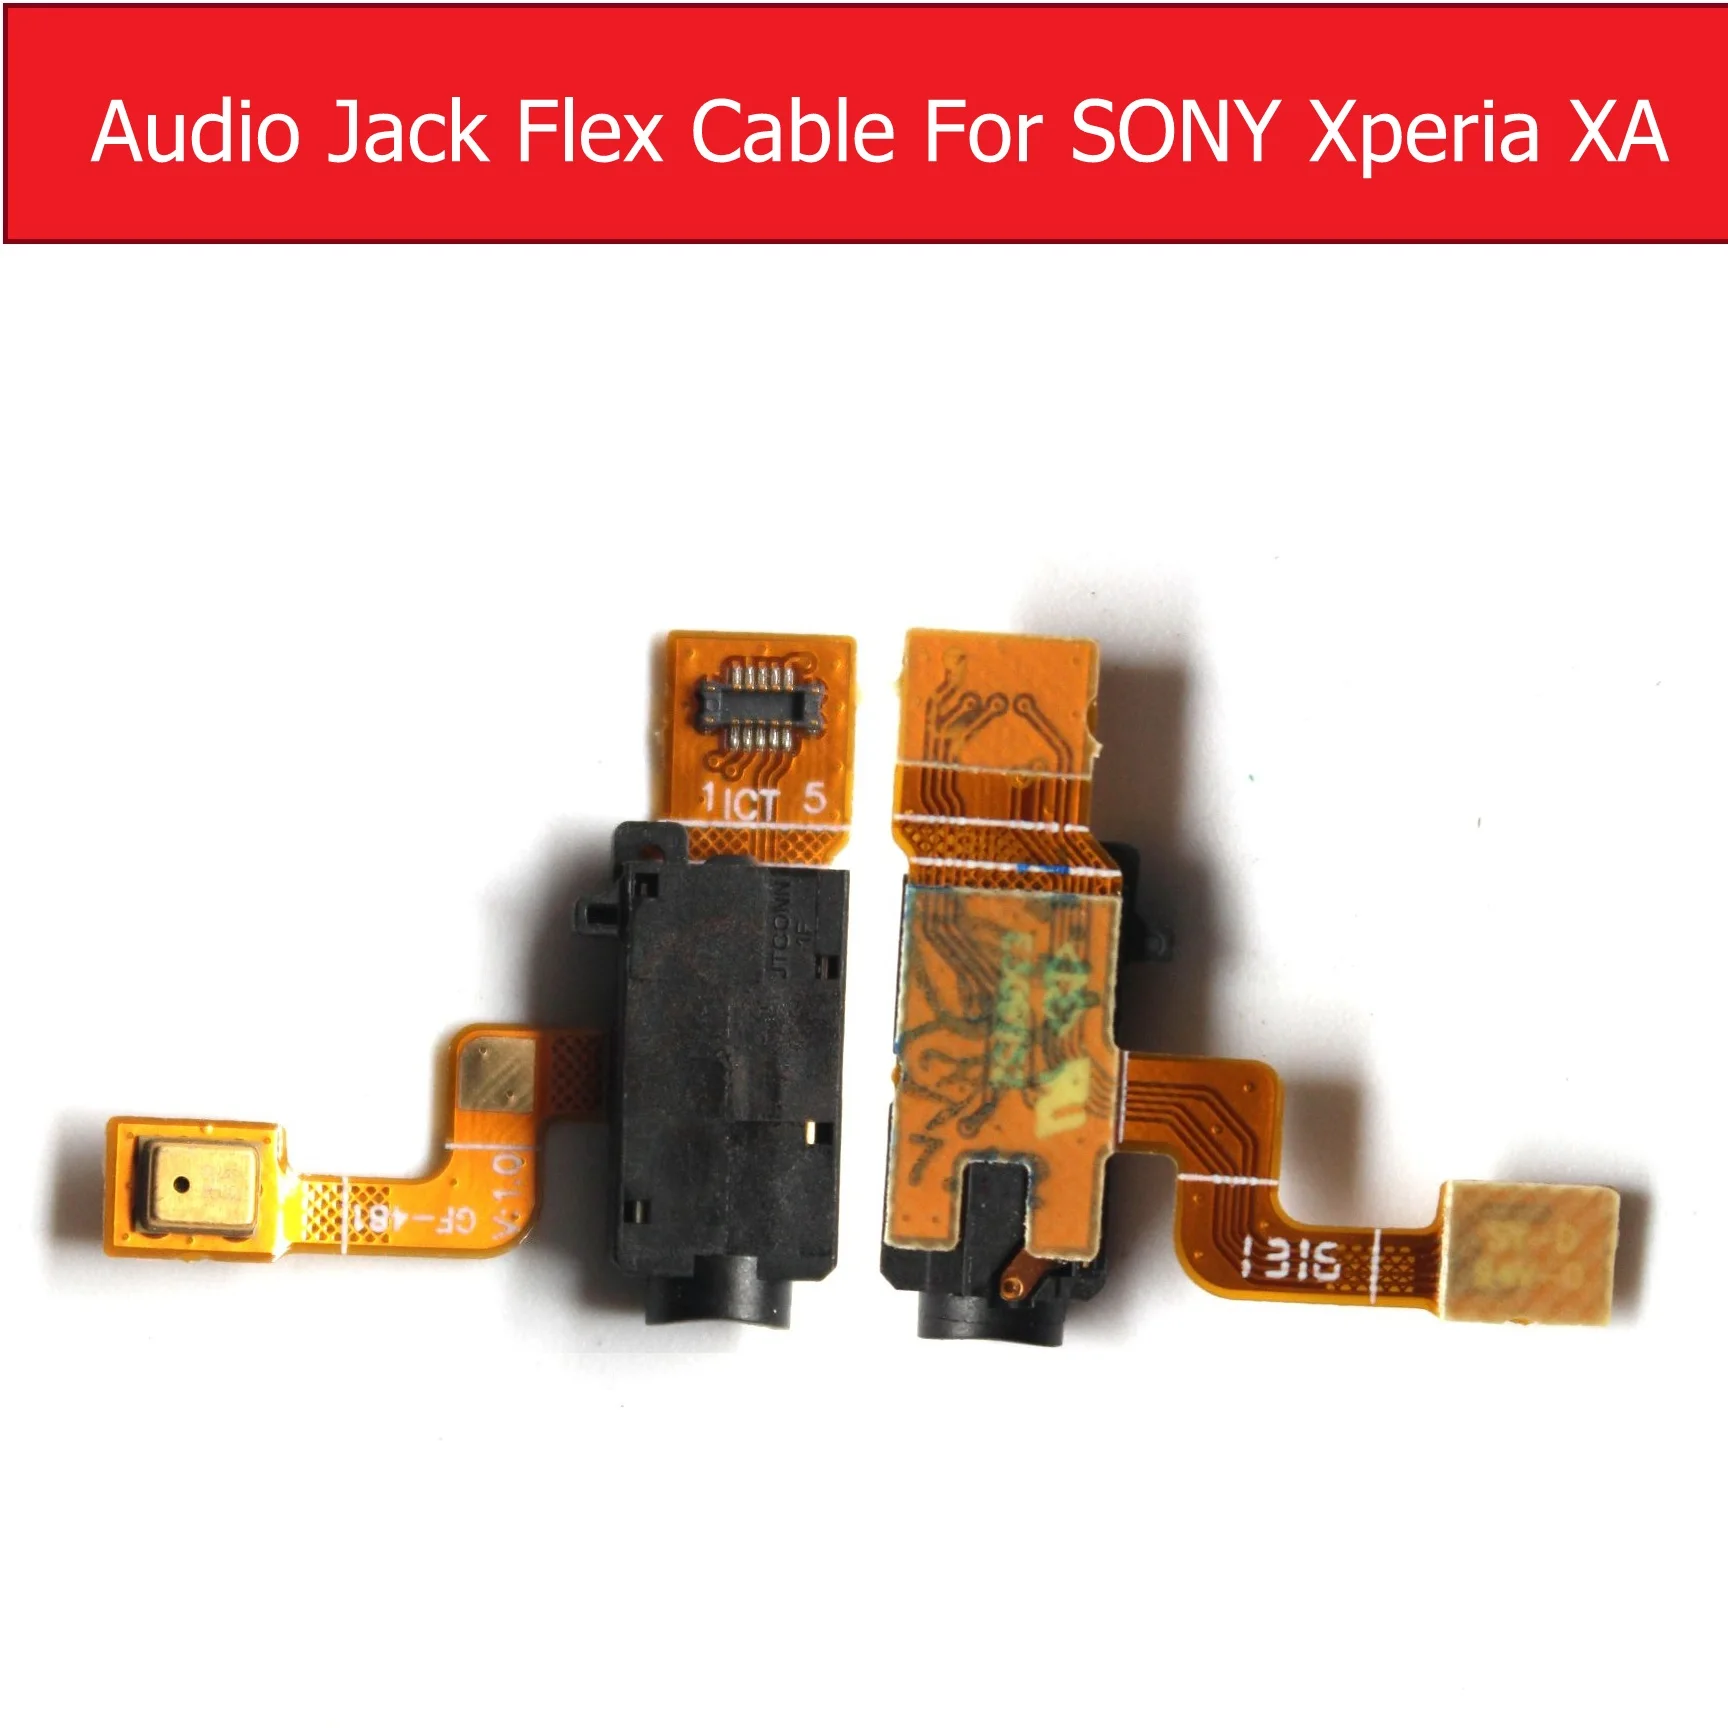 Гибкая лента с аудиоразъемом для Sony Xperia X/X Compact/X Performance/XA/XA1/XA1P/XA1 Ultra/XZ